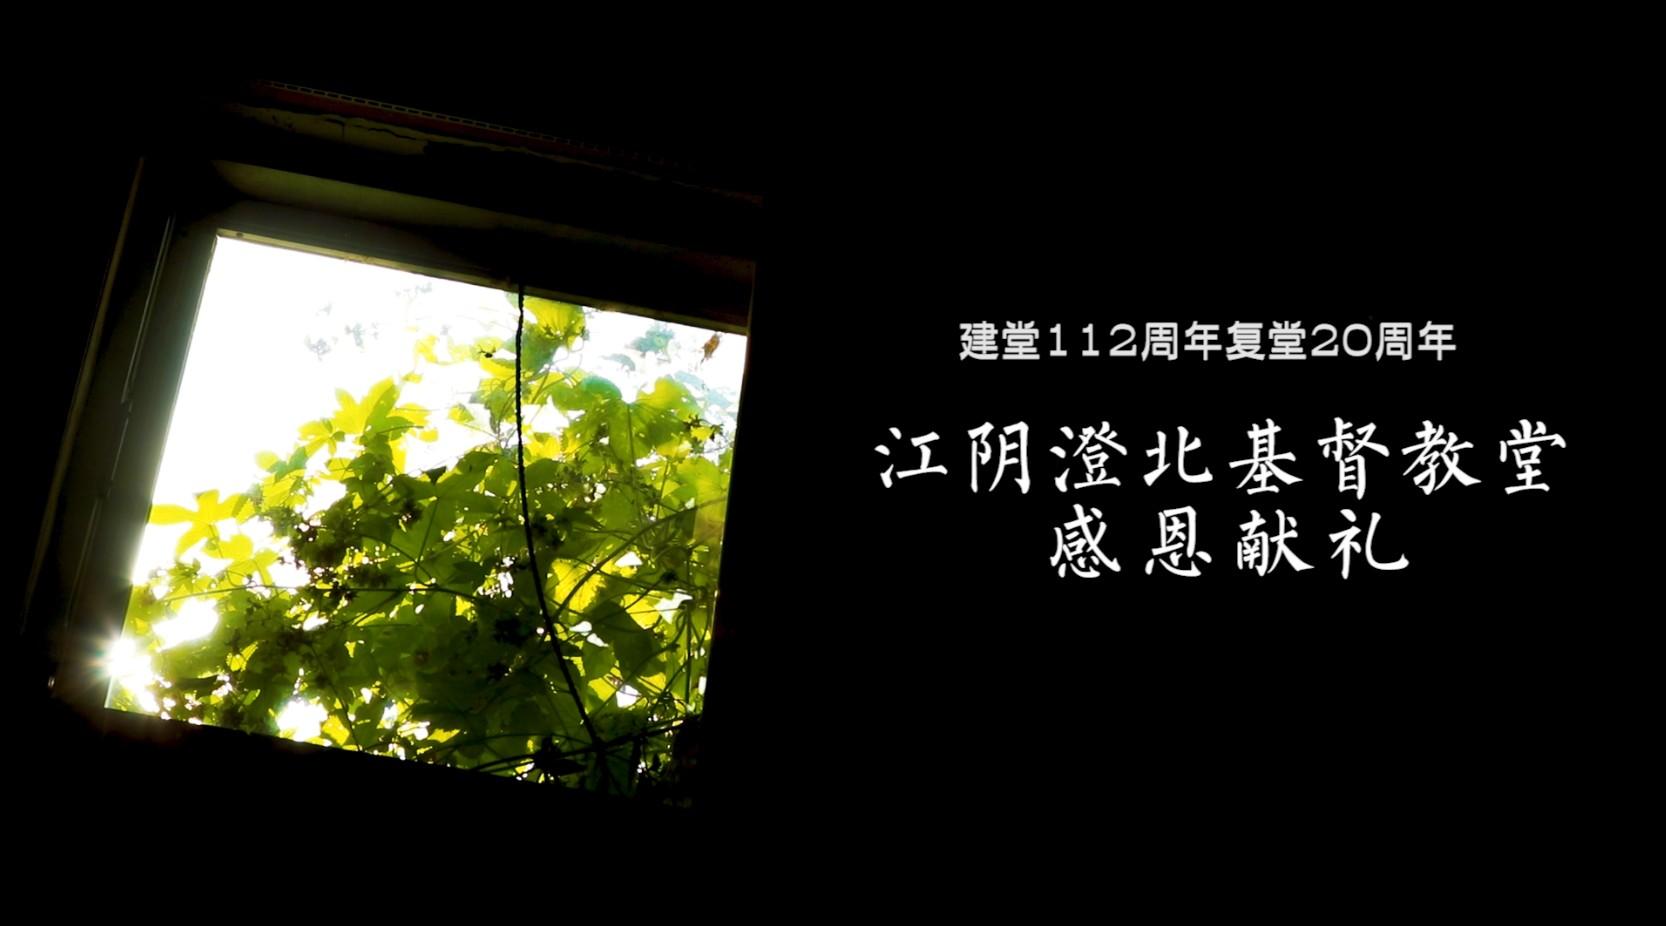 江阴澄北基督教堂复堂20周年纪录片